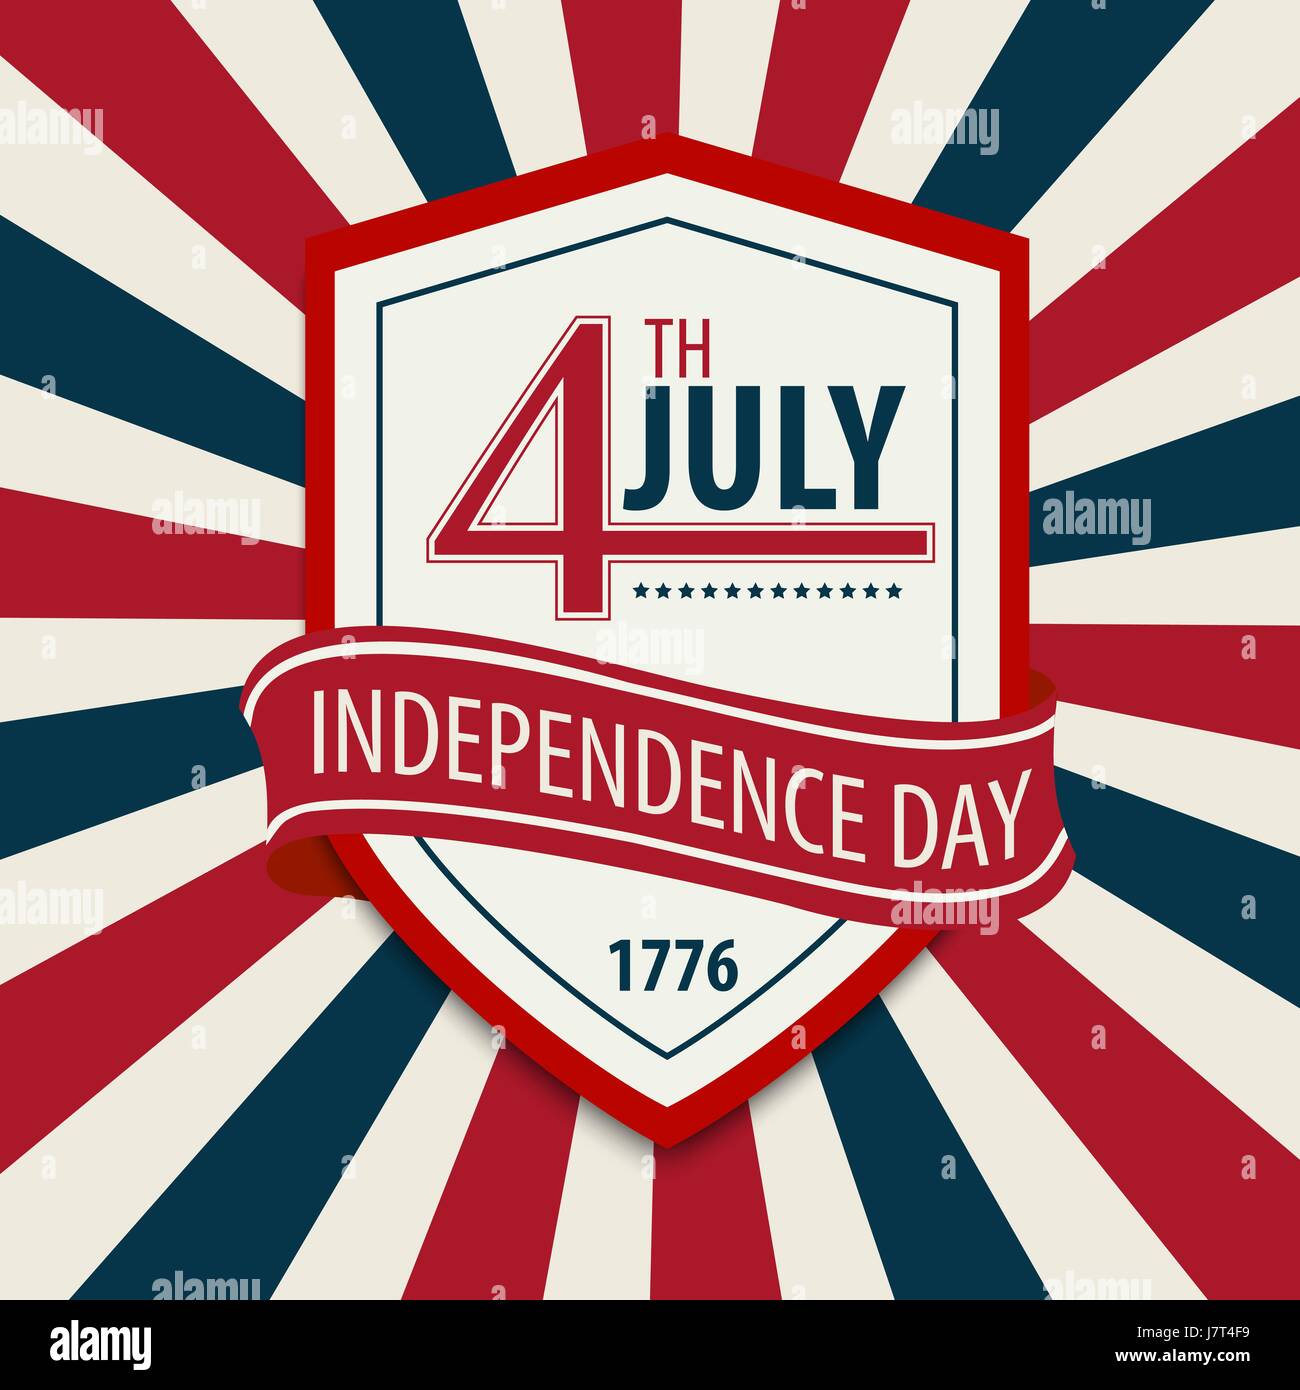 Carte postale en célébration de l'Independence Day aux États-Unis D'AMÉRIQUE 4ÈME DE JUILLET. Illustration de Vecteur